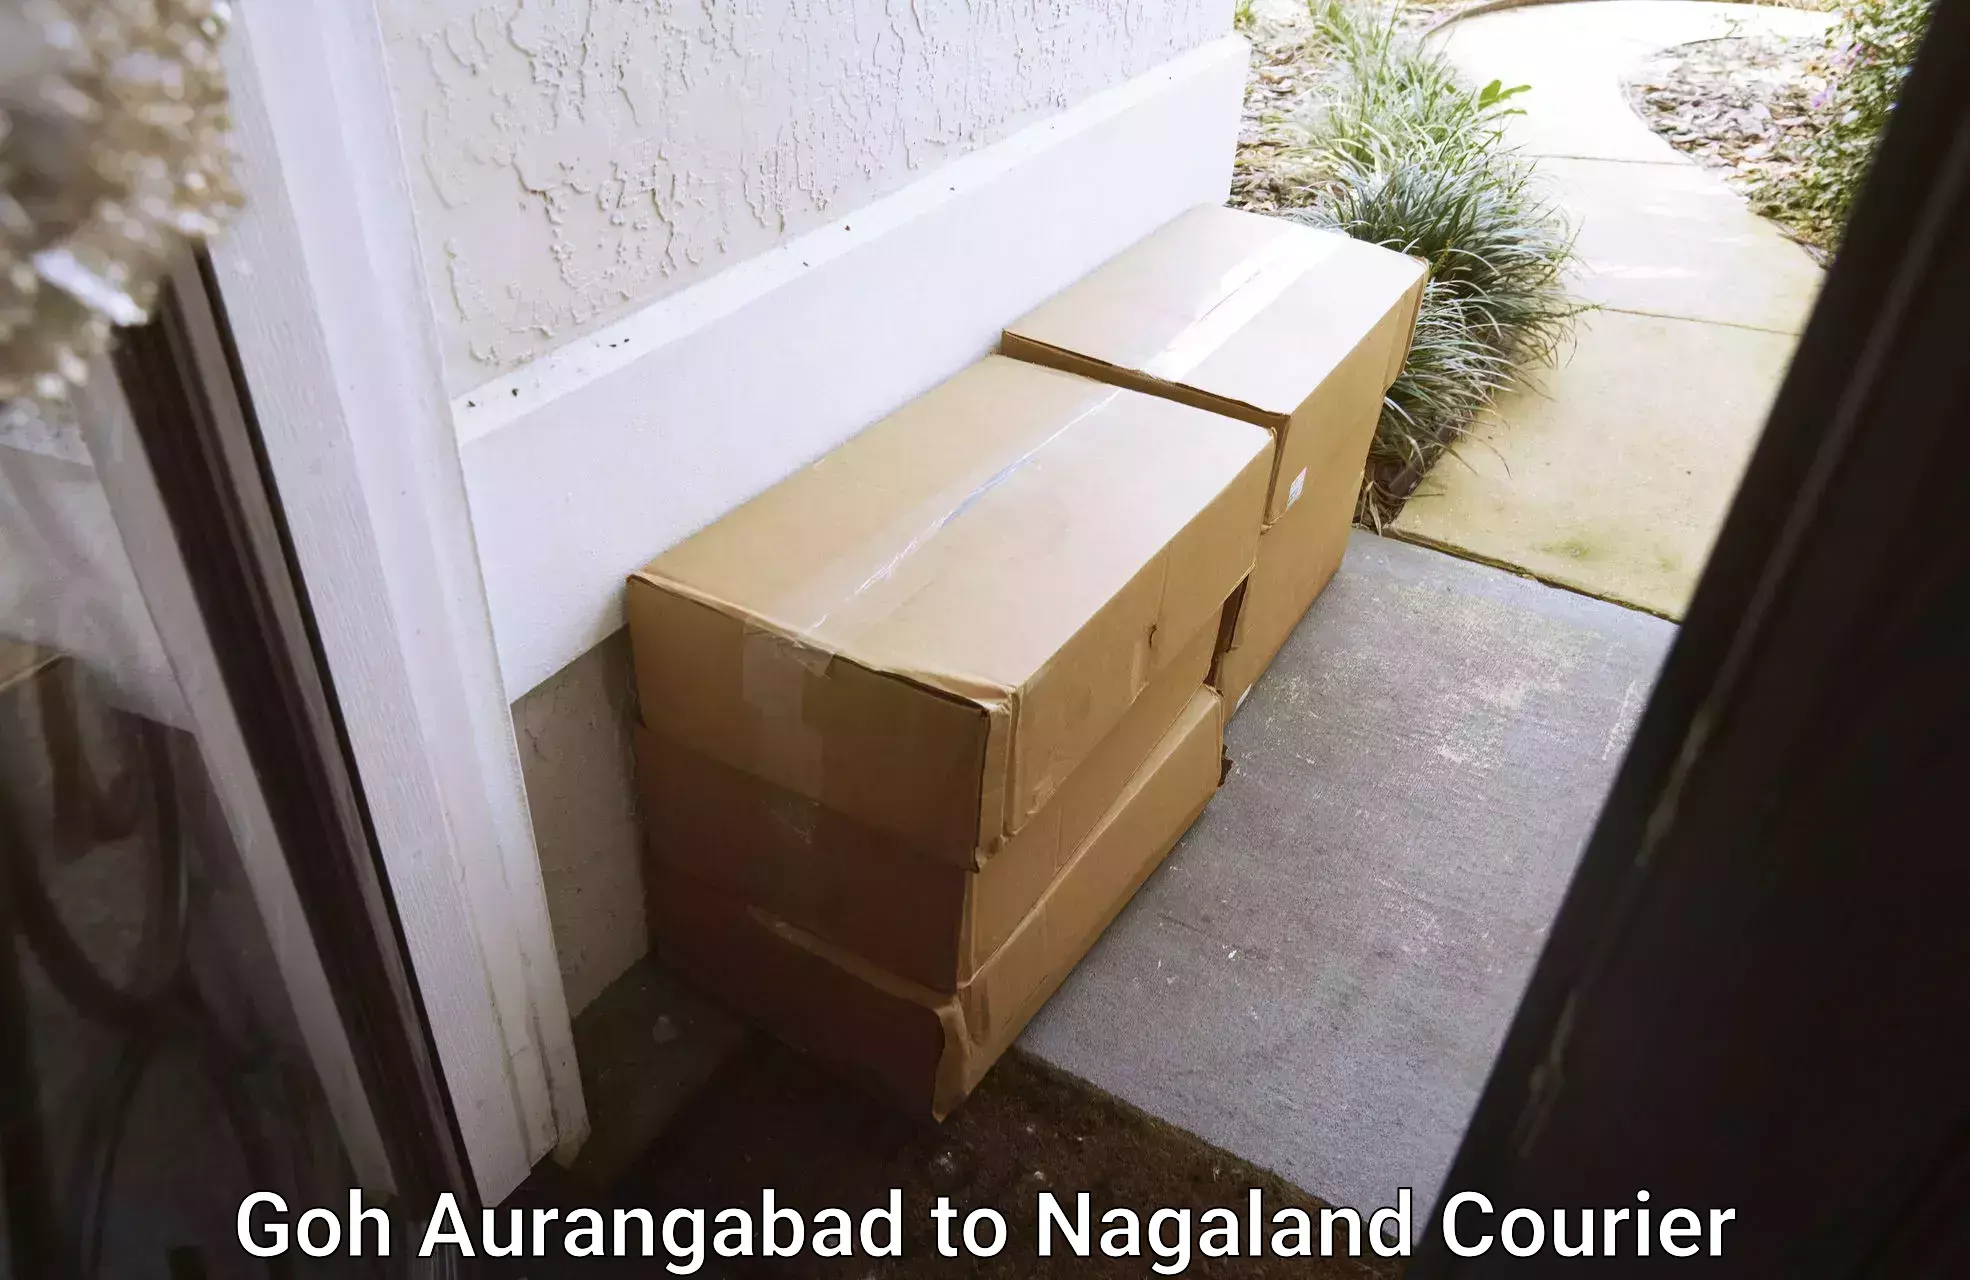 Reliable moving assistance Goh Aurangabad to Wokha